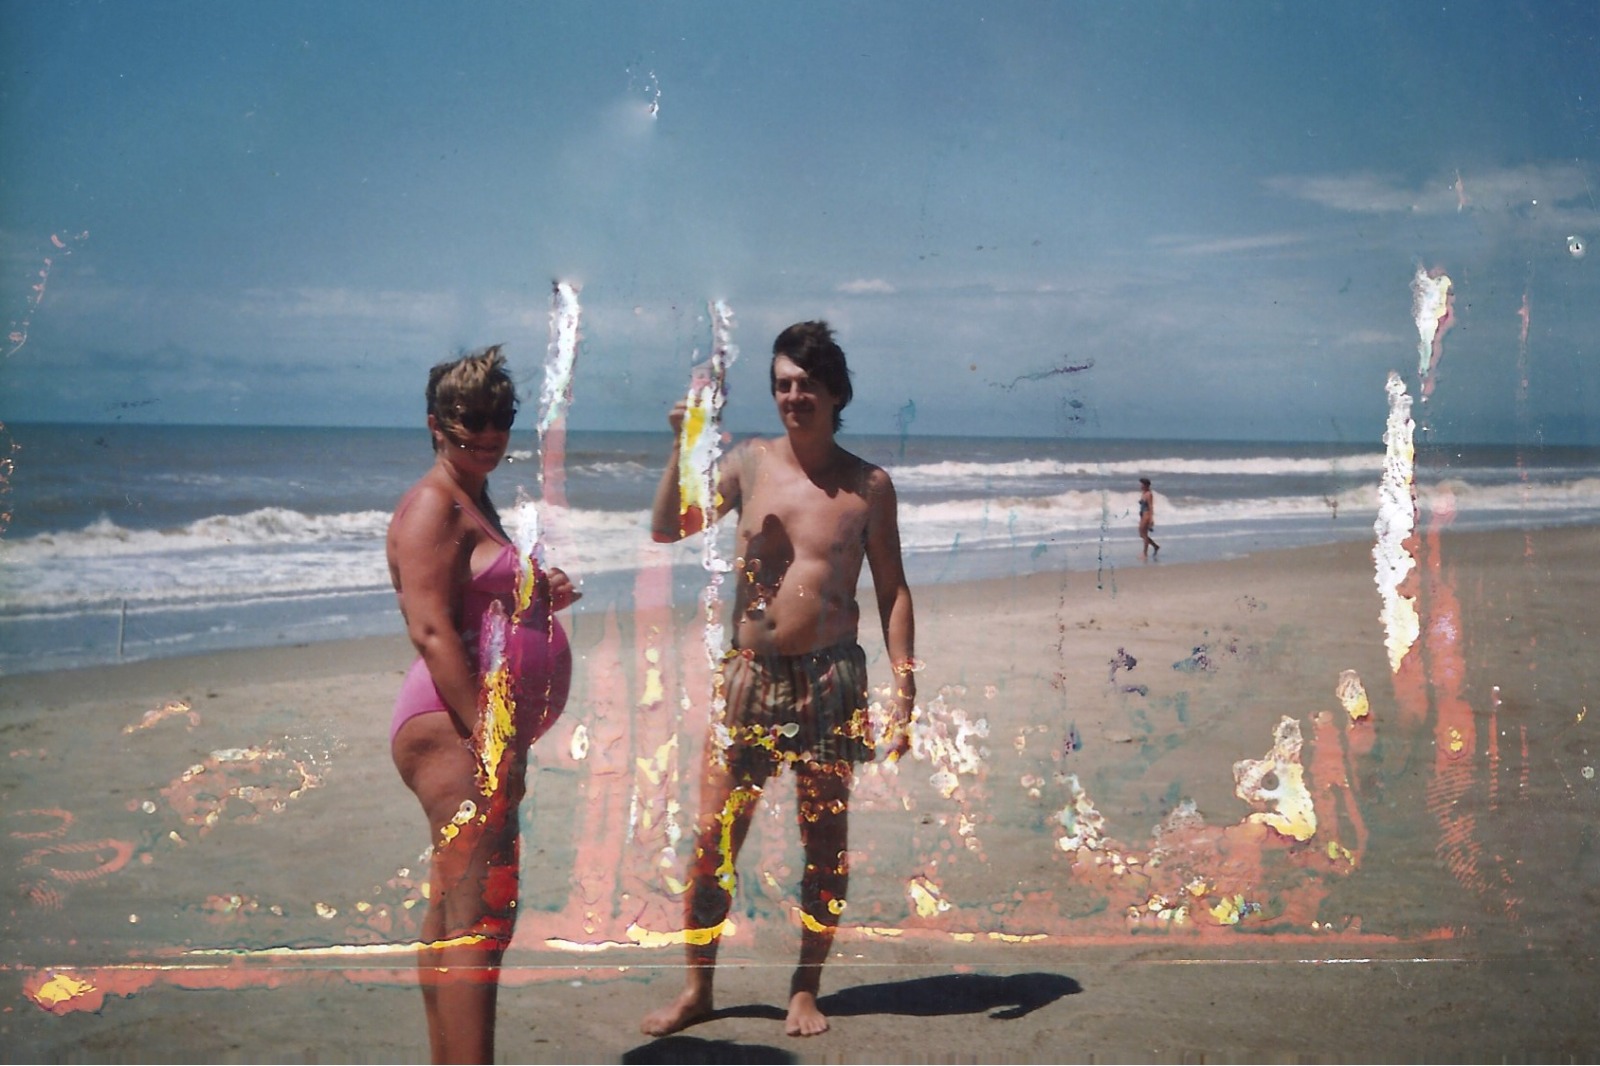 Foto antes de ser restaurada: homem e mulher na praia